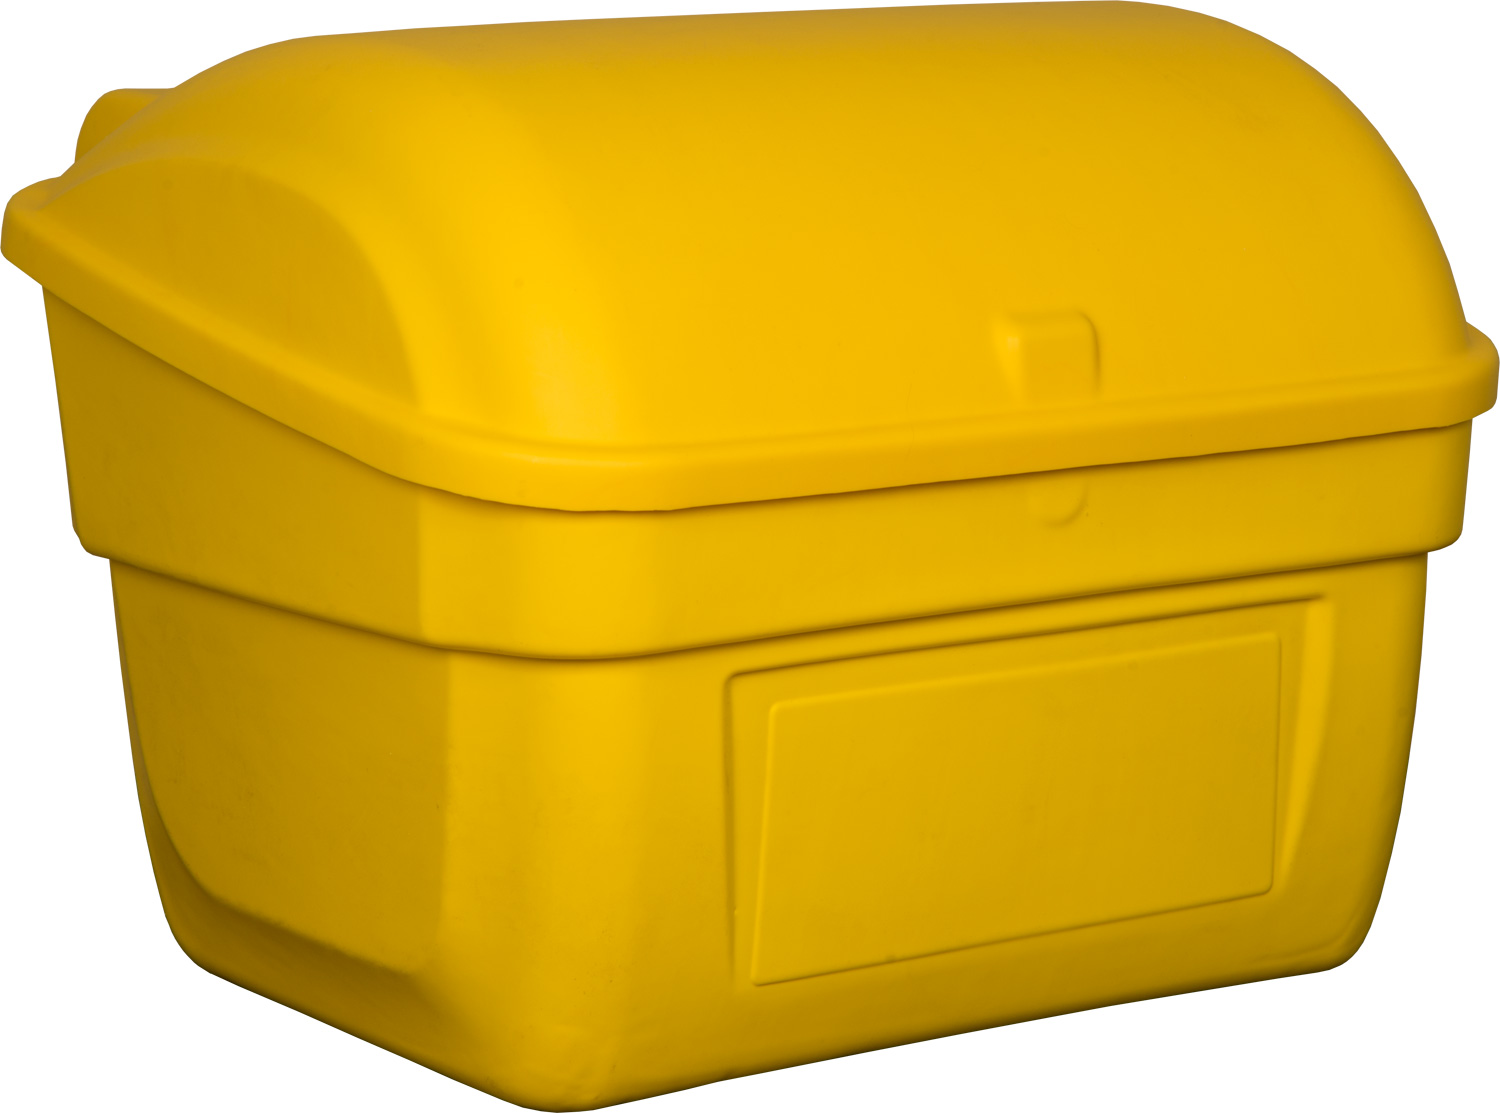 Контейнер для песка с крышкой, желтый КДП-220 желтый 800x810x650 мм 220 л